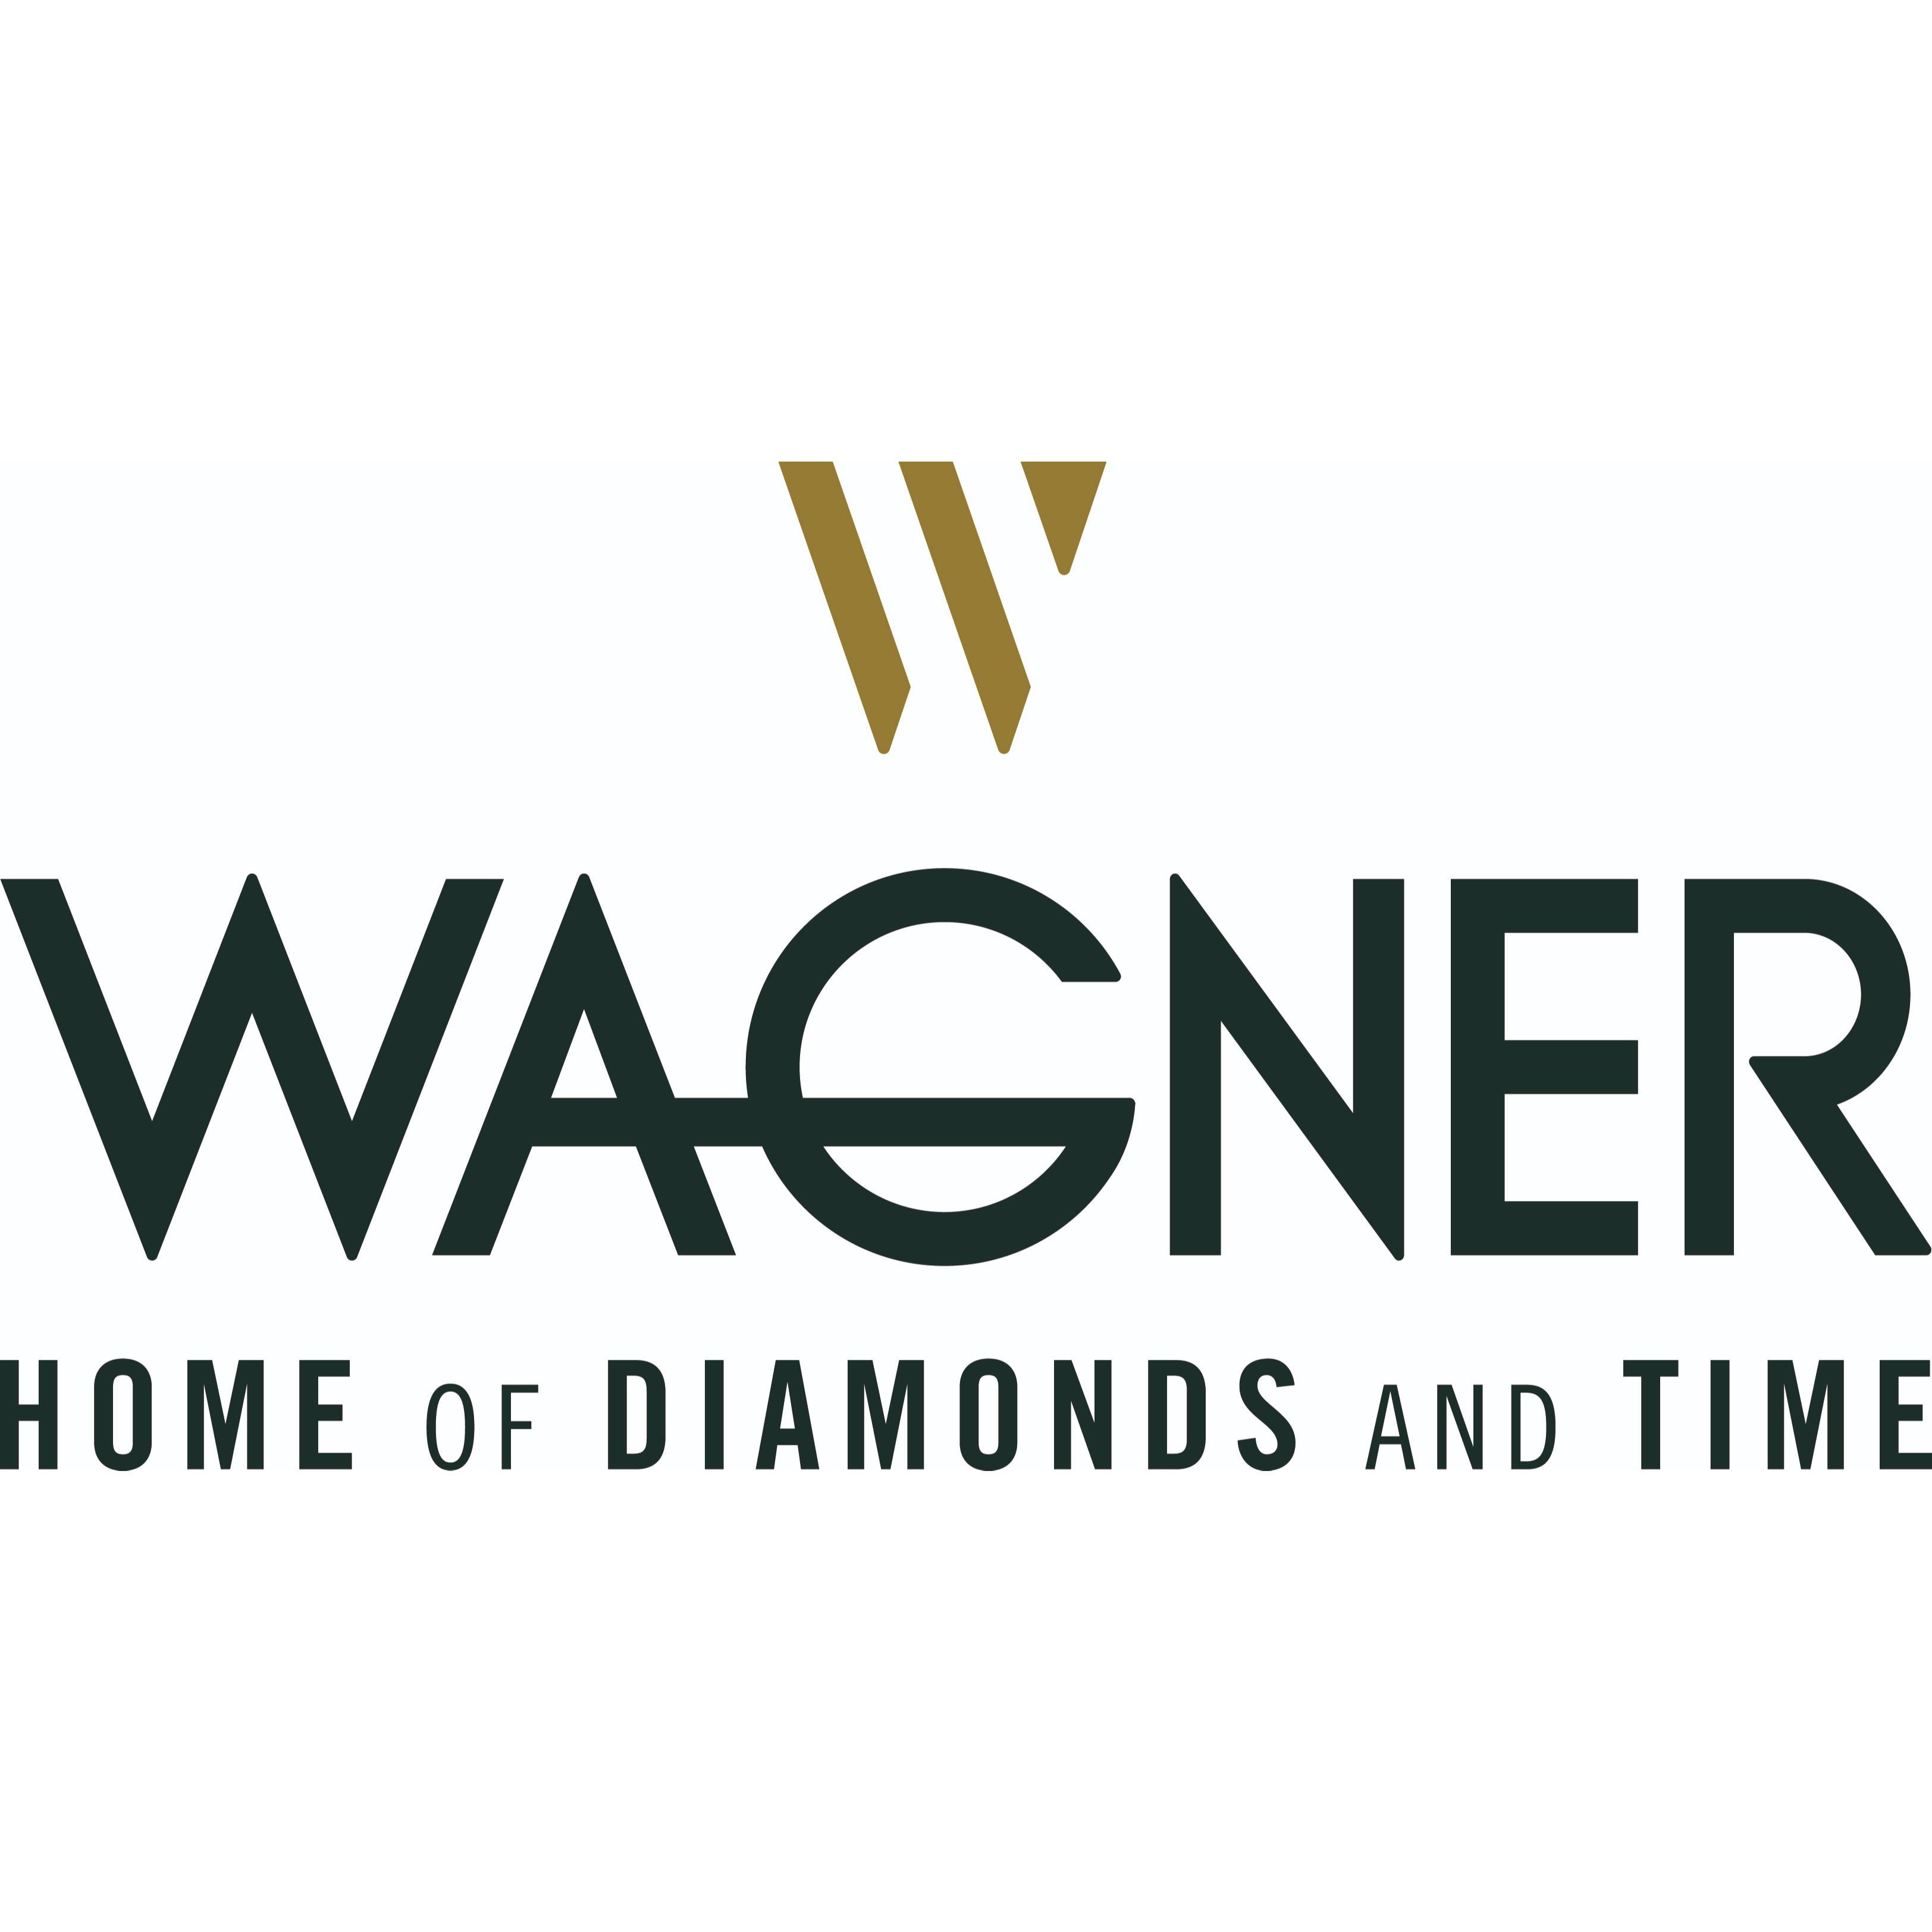 Juwelier Wagner Logo